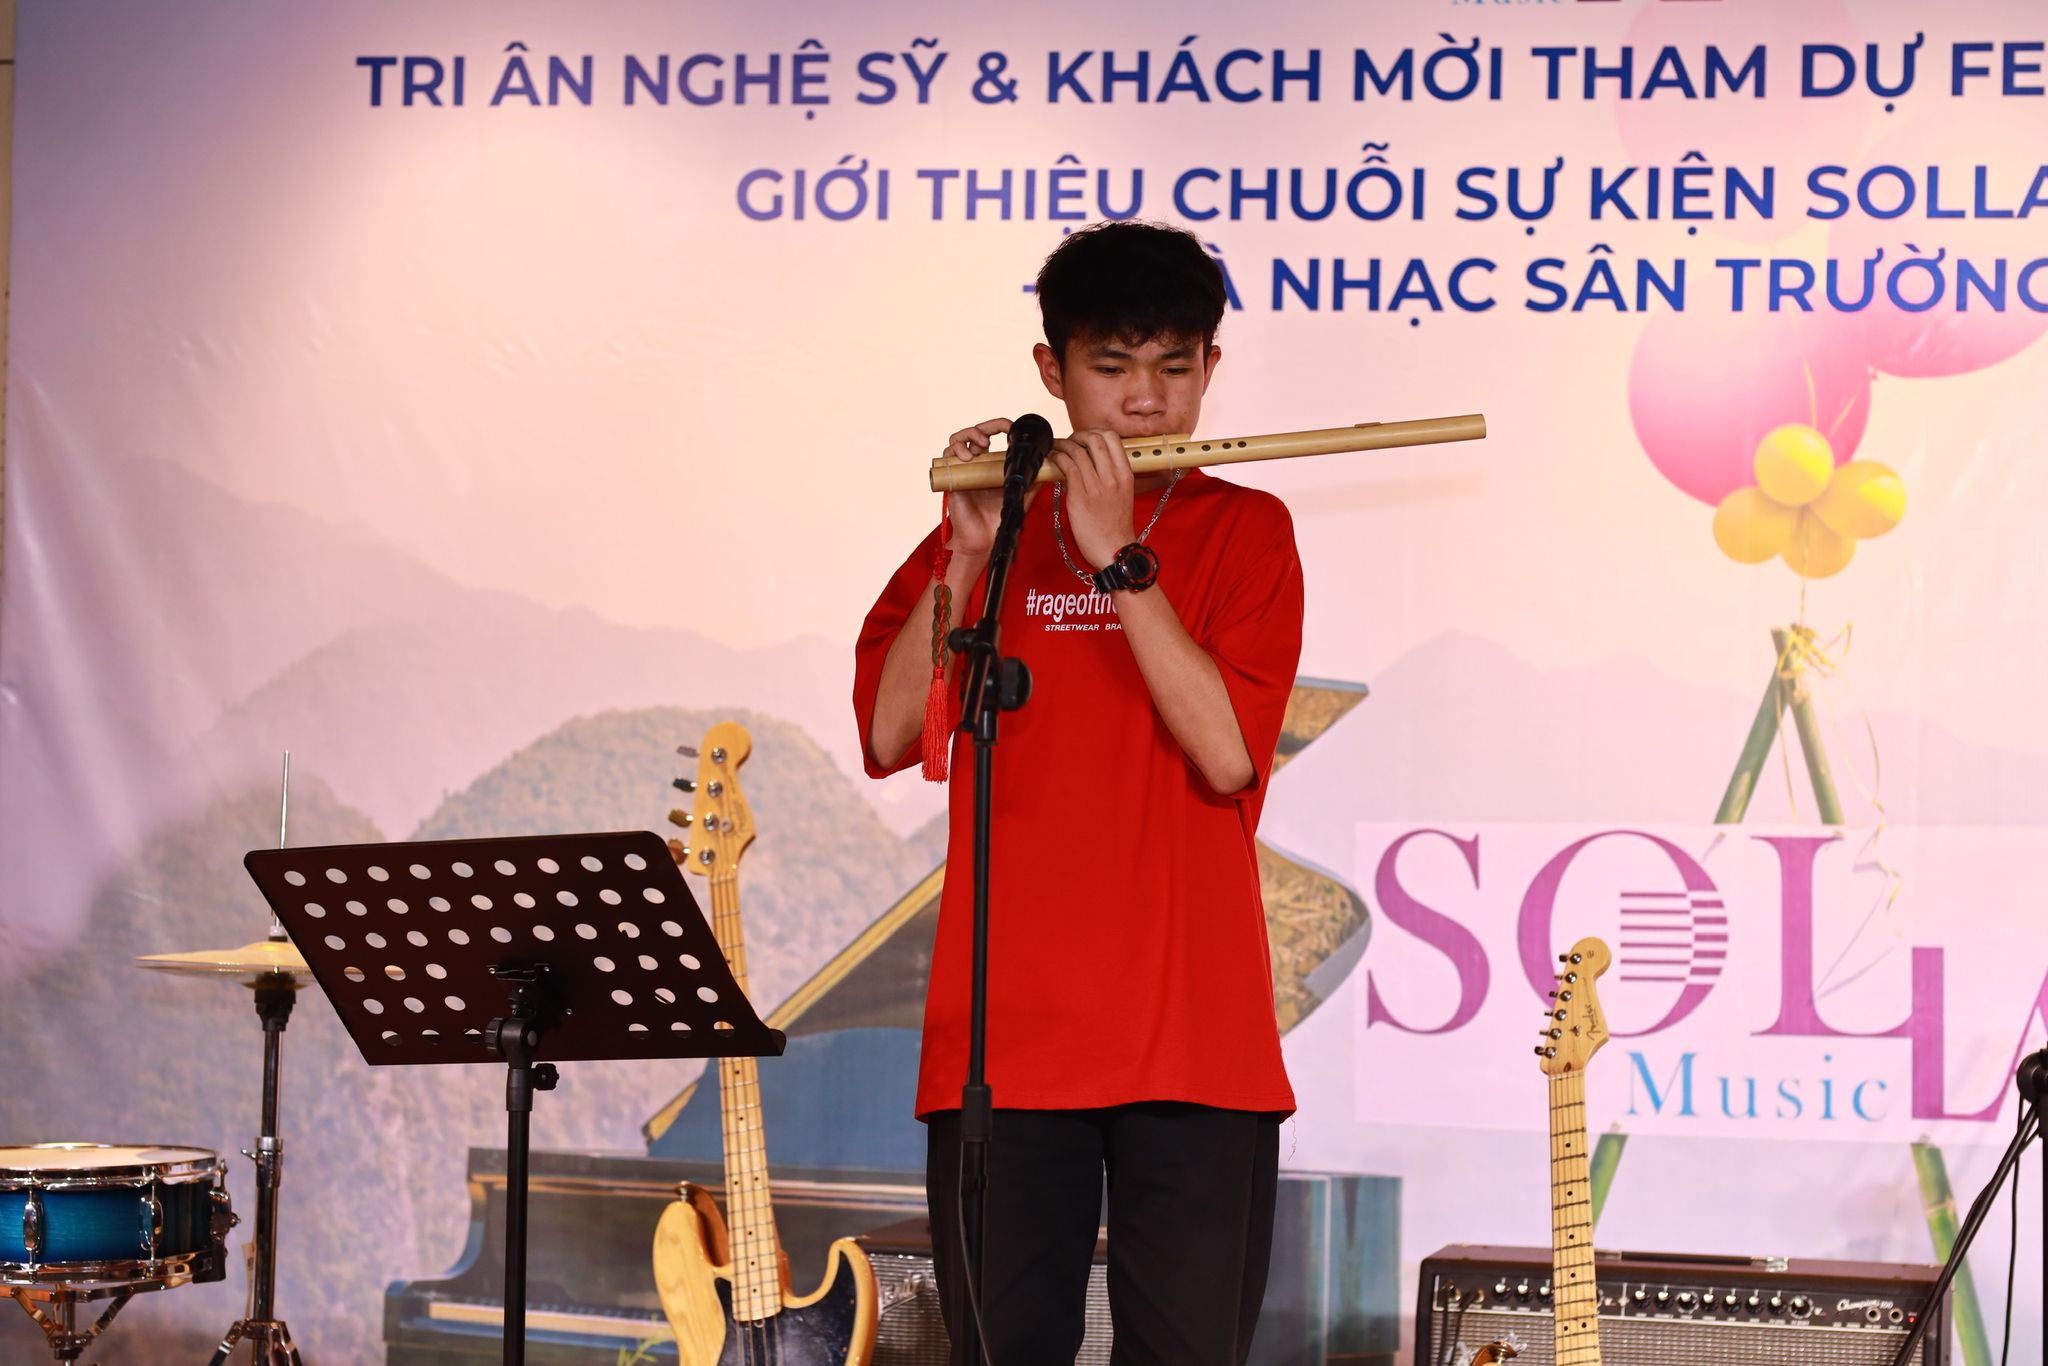 Em trai Thanh Lam đưa nhạc cổ điển, nhạc dân tộc tới trường học - 2